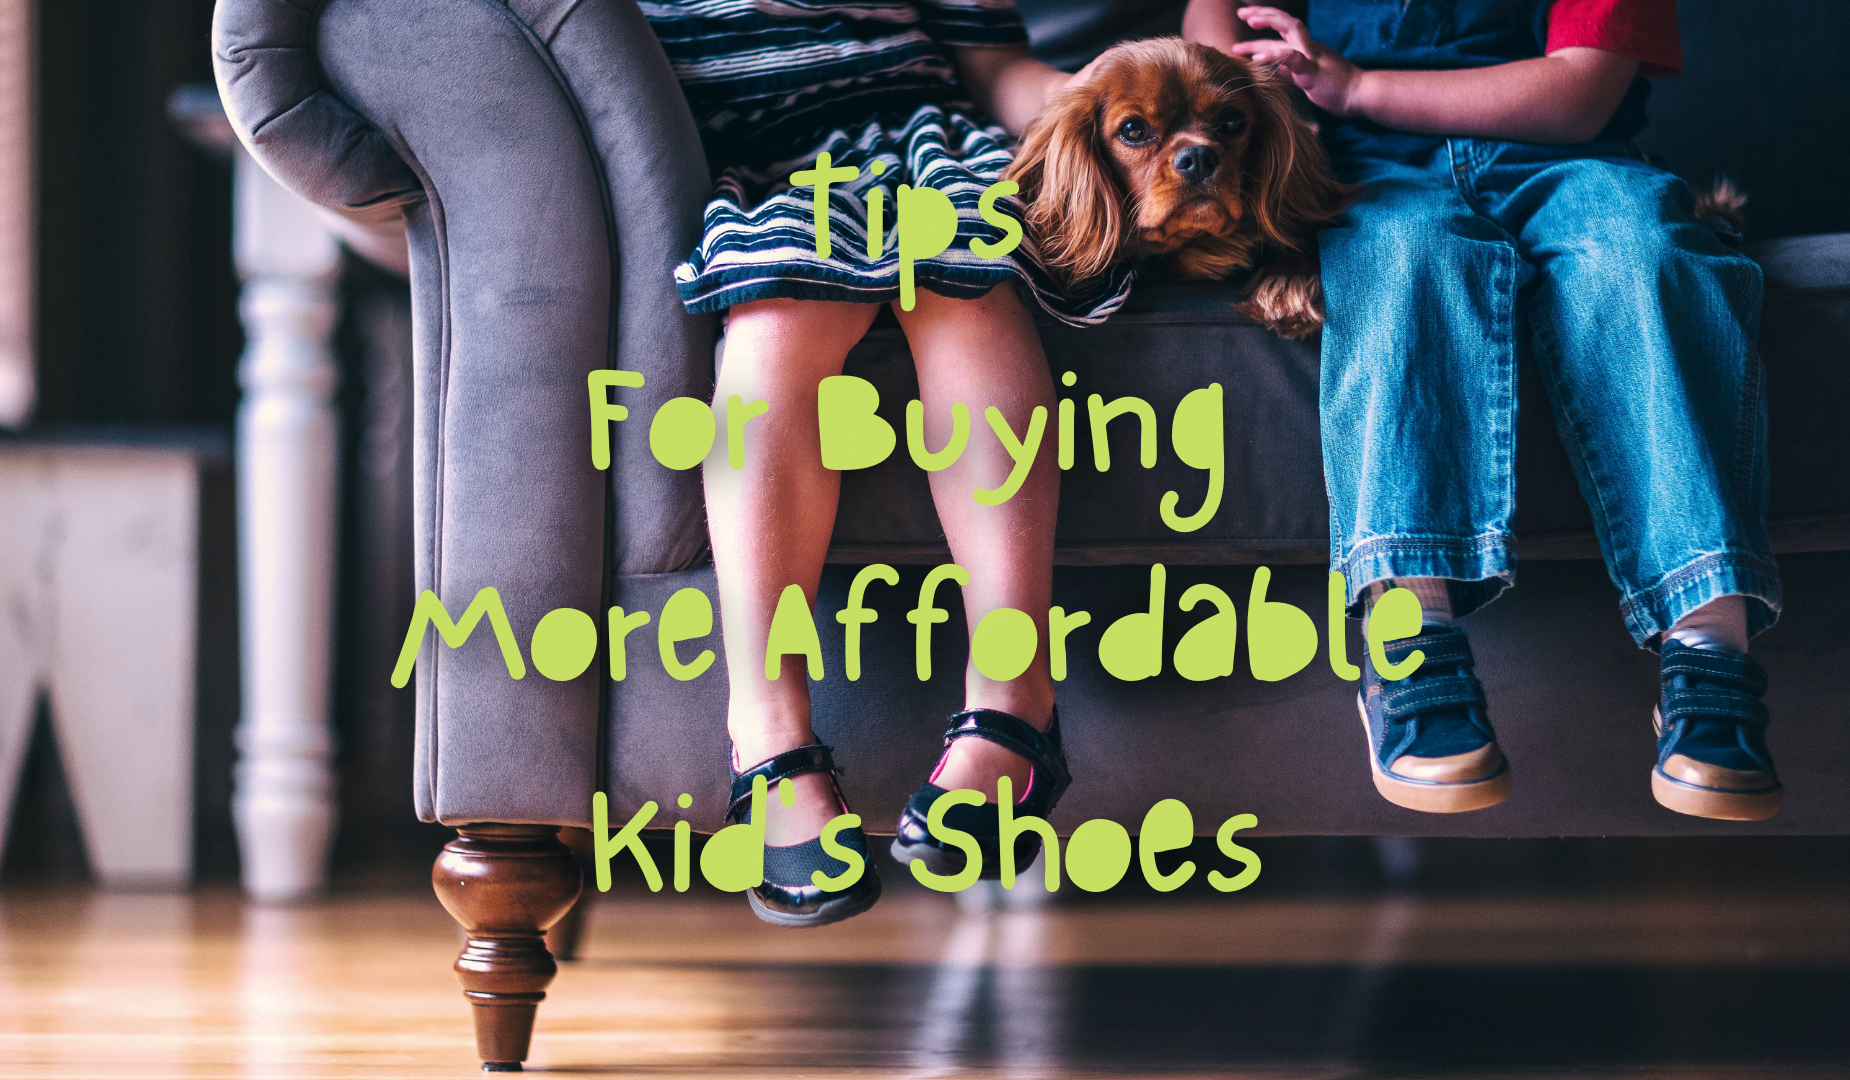 Tippek megfizethetőbb gyerekcipők vásárlásához